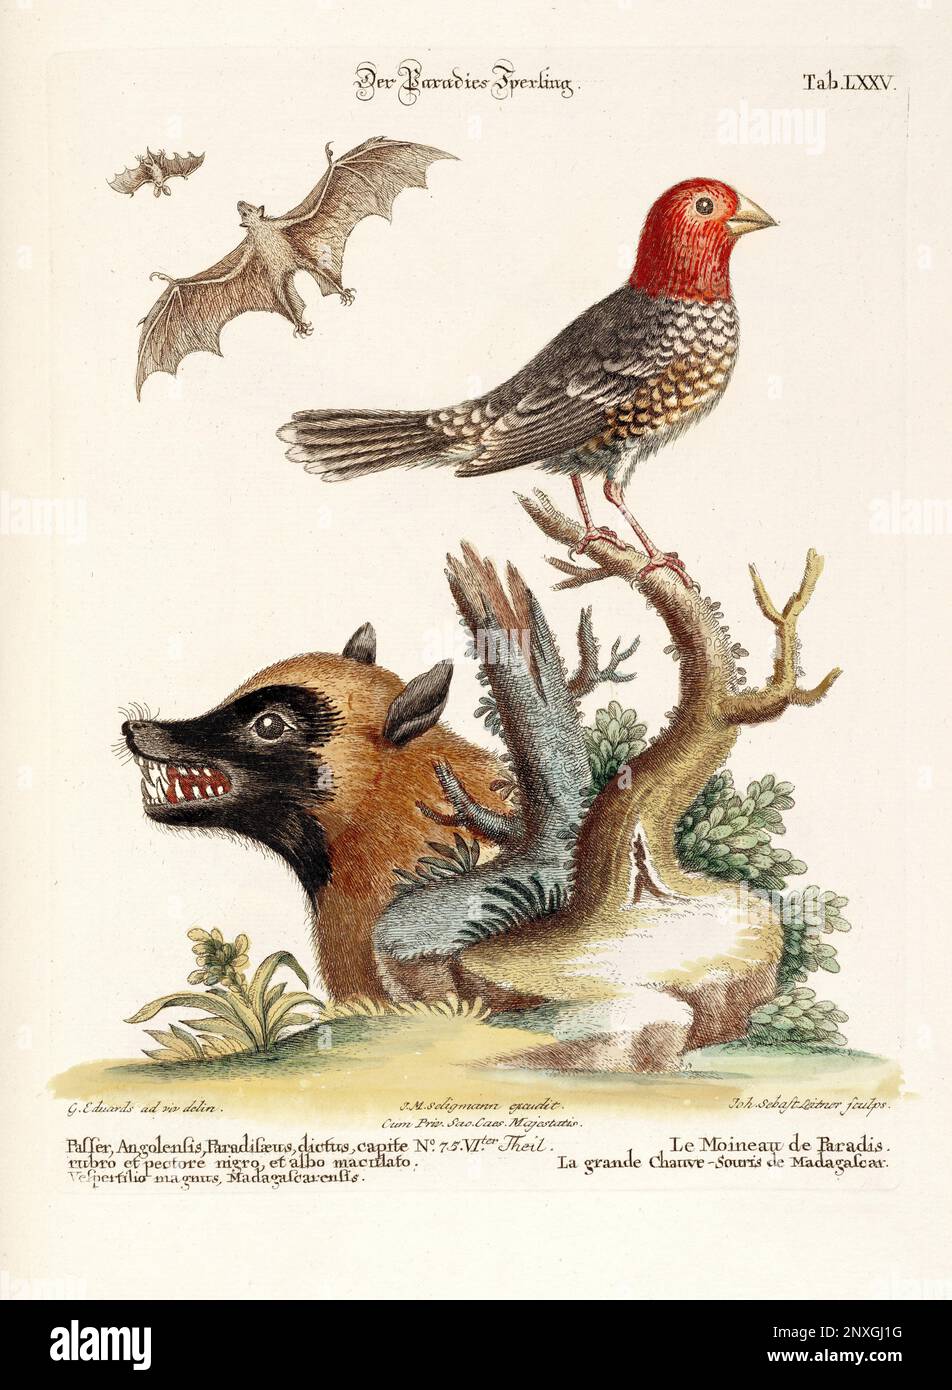 Un uccello, un pipistrello e una volpe di Madagascar-piatto antico del libro olandese: Collezione di uccelli stranieri e rari, illustrato da George Edwards-1772 Foto Stock